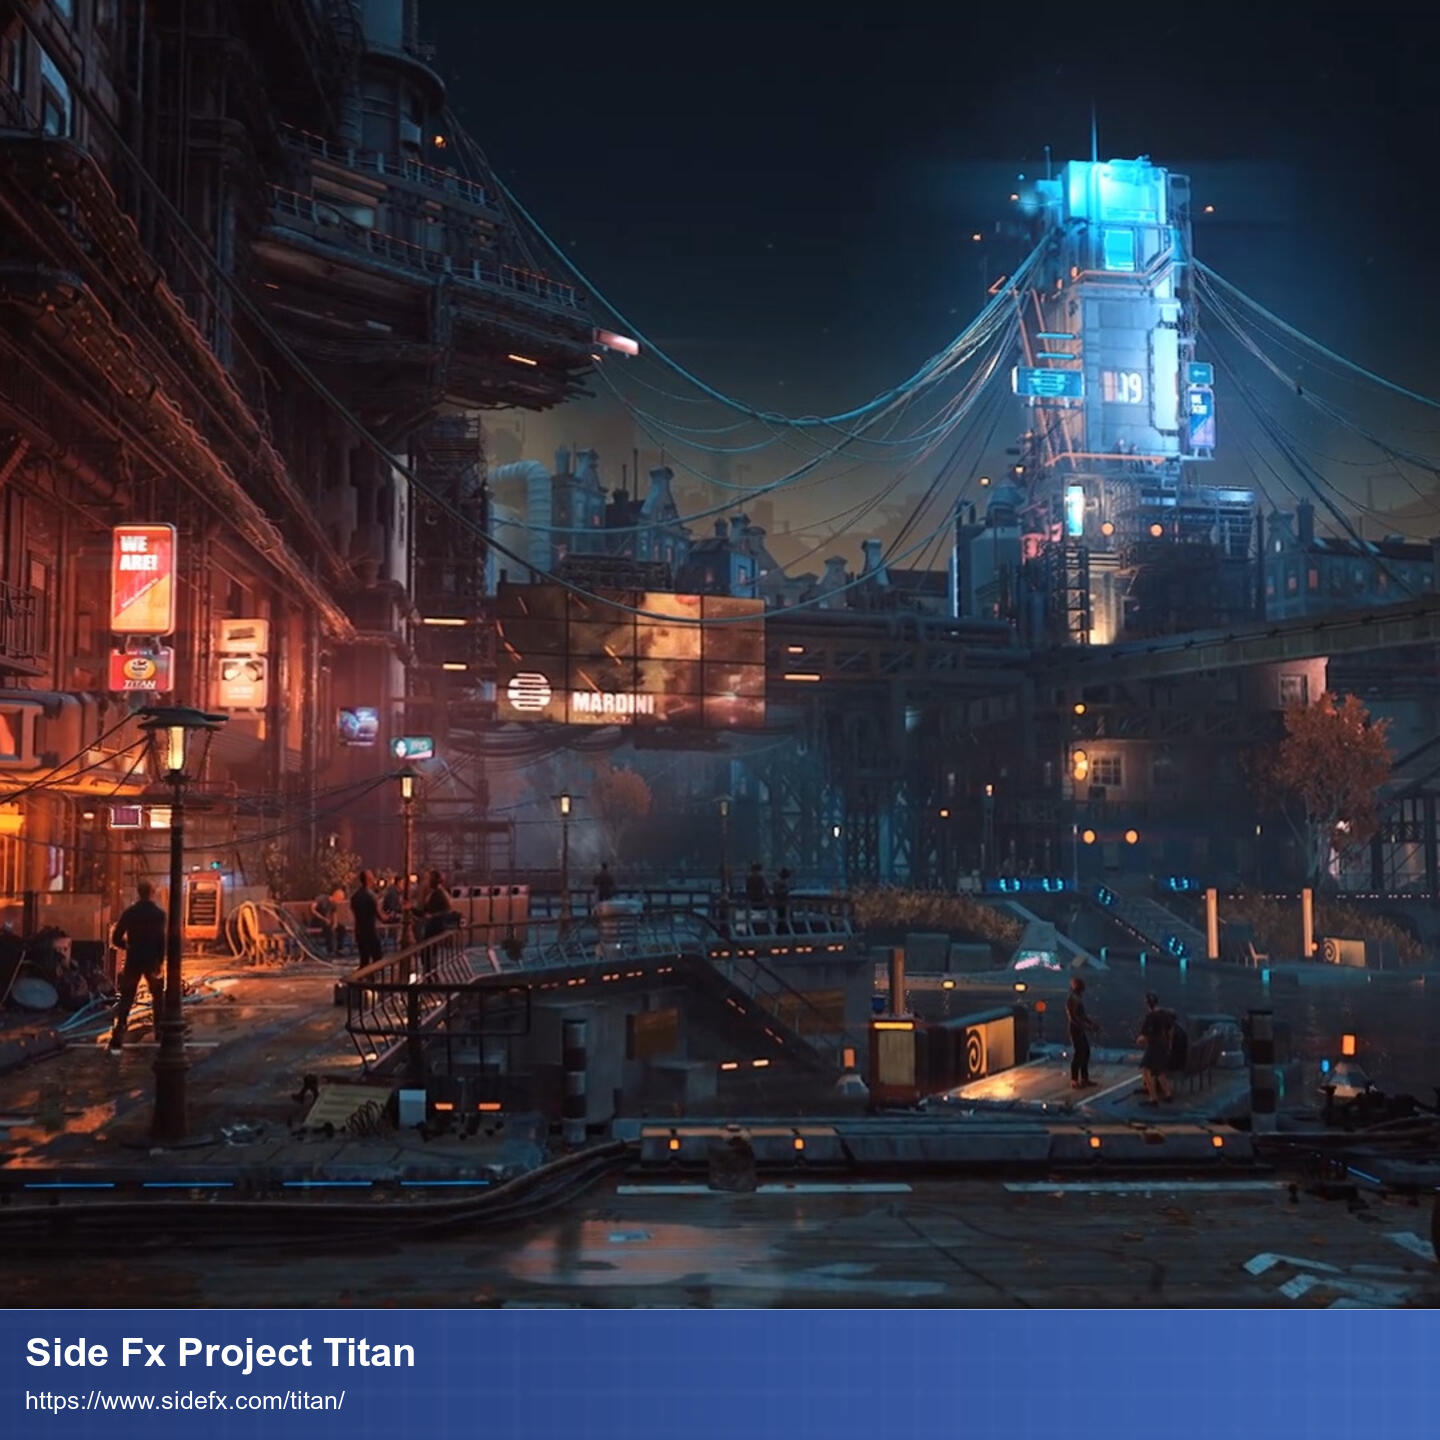 Blick auf eine Scifi-Stadt aus Perspektive eines Passanten mit Fokus auf einen imposanten Turm zu dem massenweise Kabel hinlaufen.